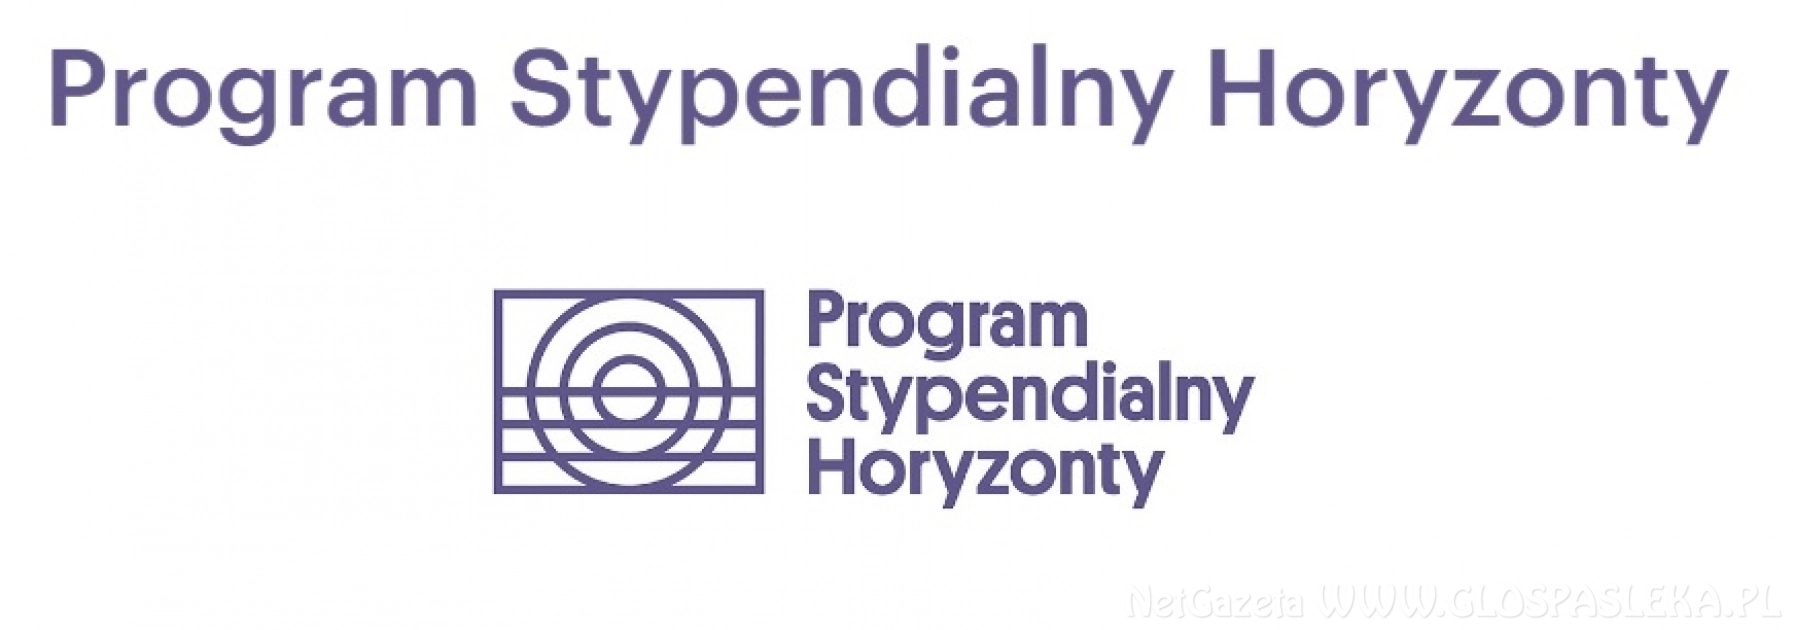 Program Stypendialny Horyzonty - stypendia dla 8 klasistów